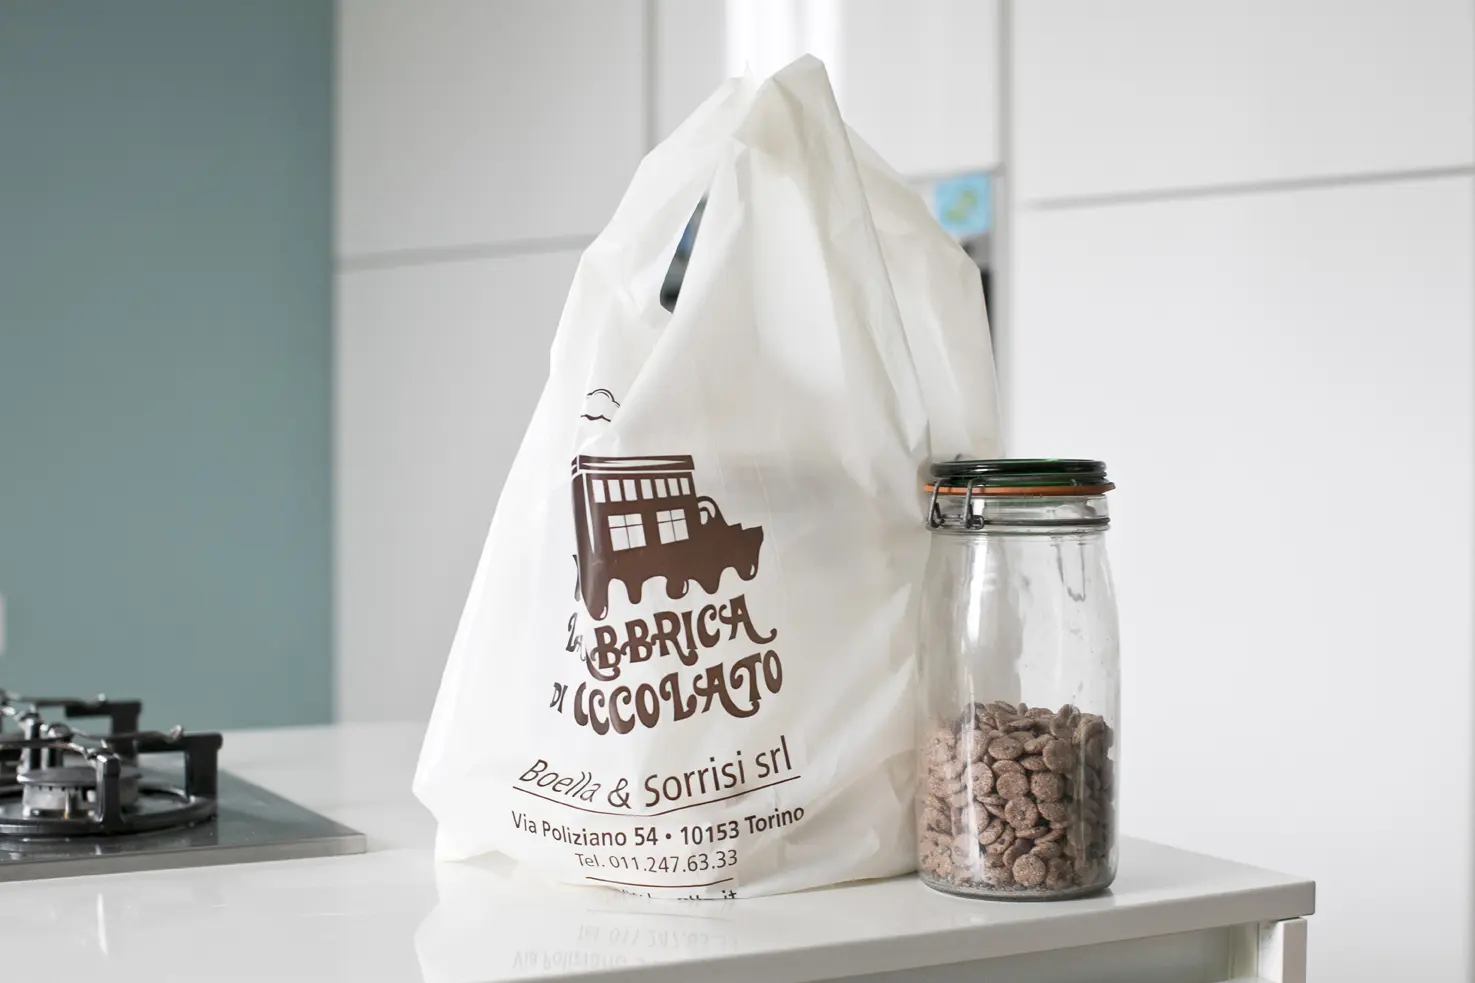 Shopping bag plastica, modello Corallo, personalizzata "La Fabbrica di Cioccolato Boella & Sorrisi srl" - PG Plast